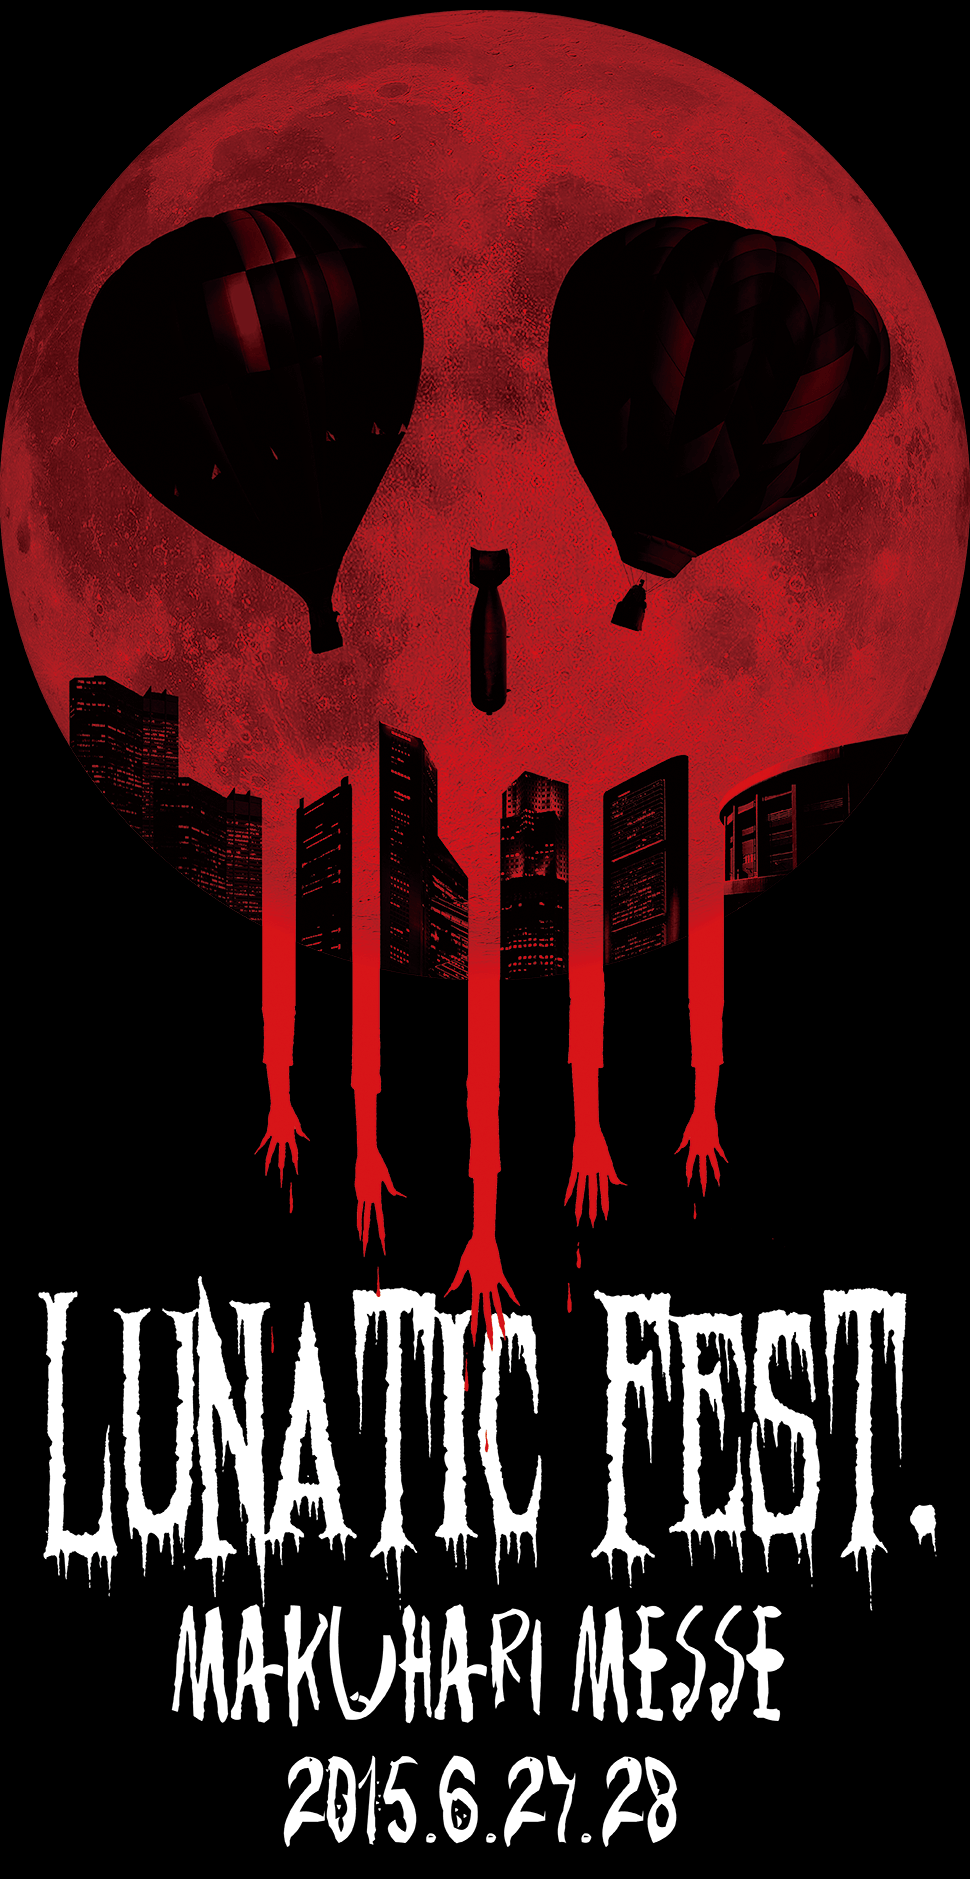 Lunatic Fest Uk Project